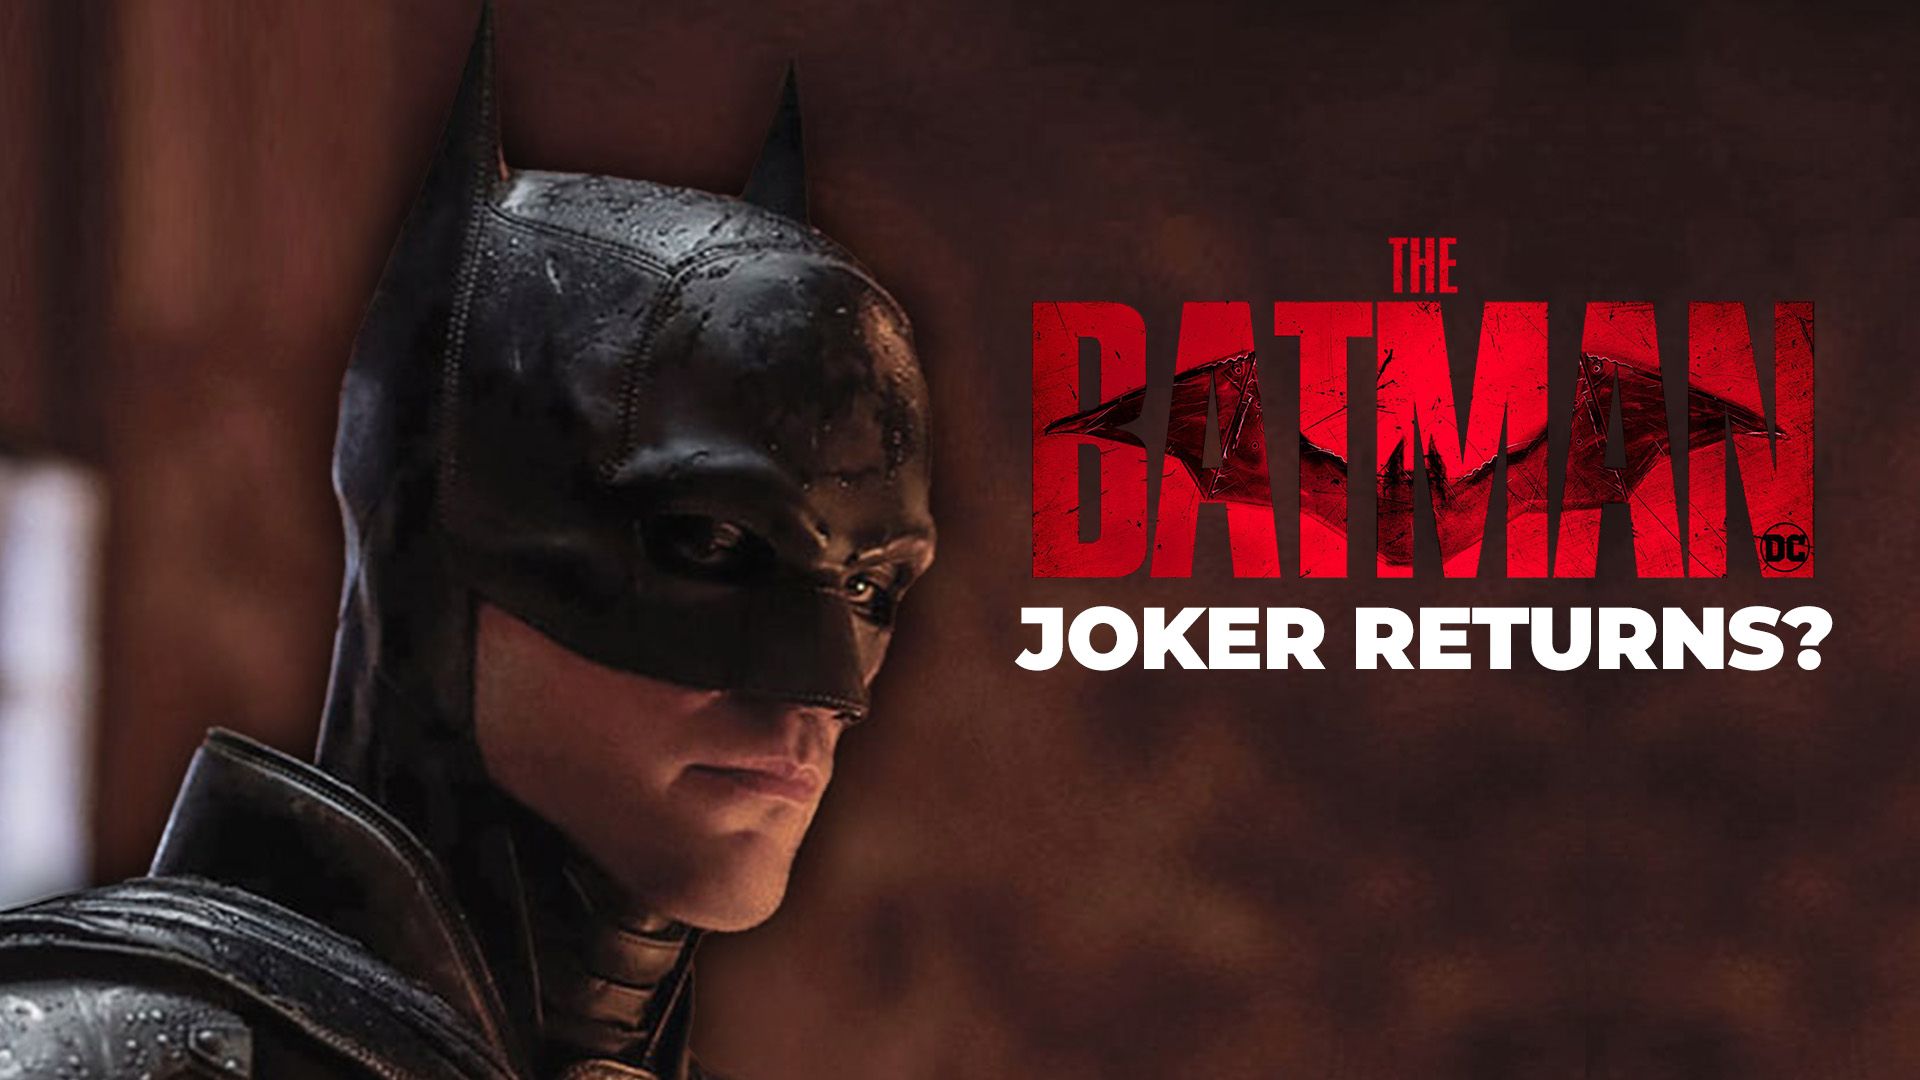 The Batman star Barry Keoghan breaks silence on secret role